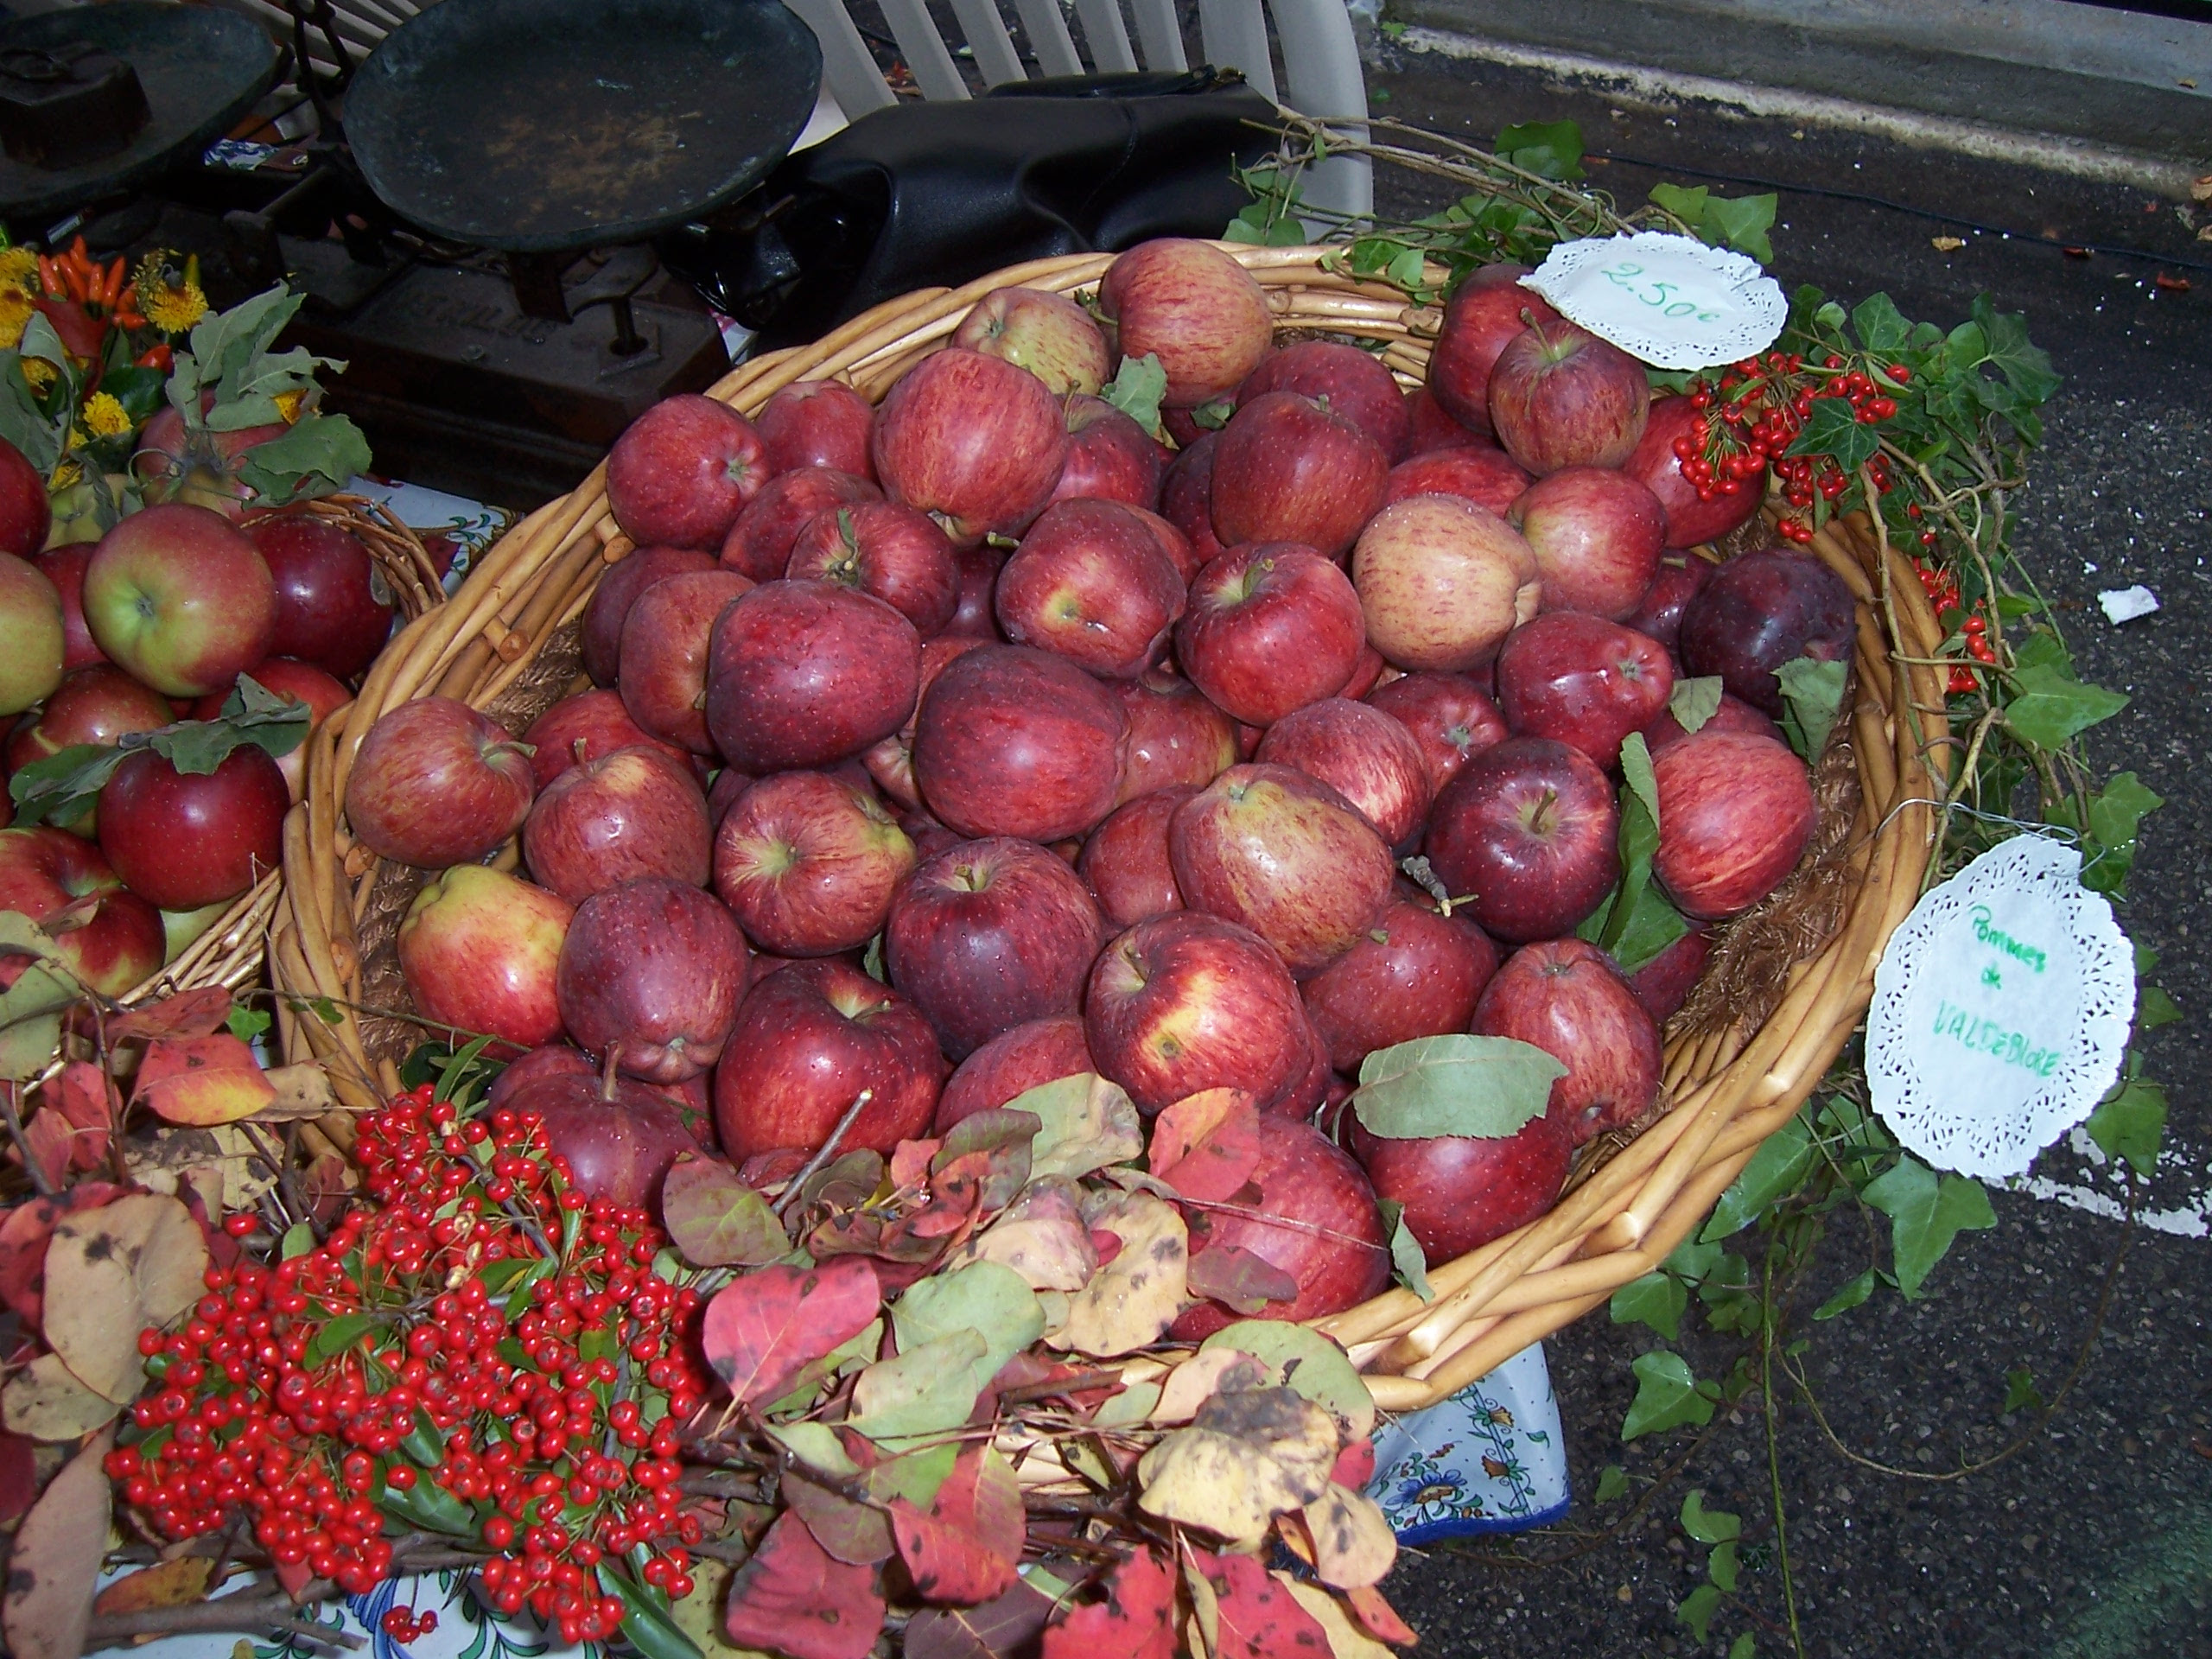 Fruits d'automne : panier de pommes rouges

